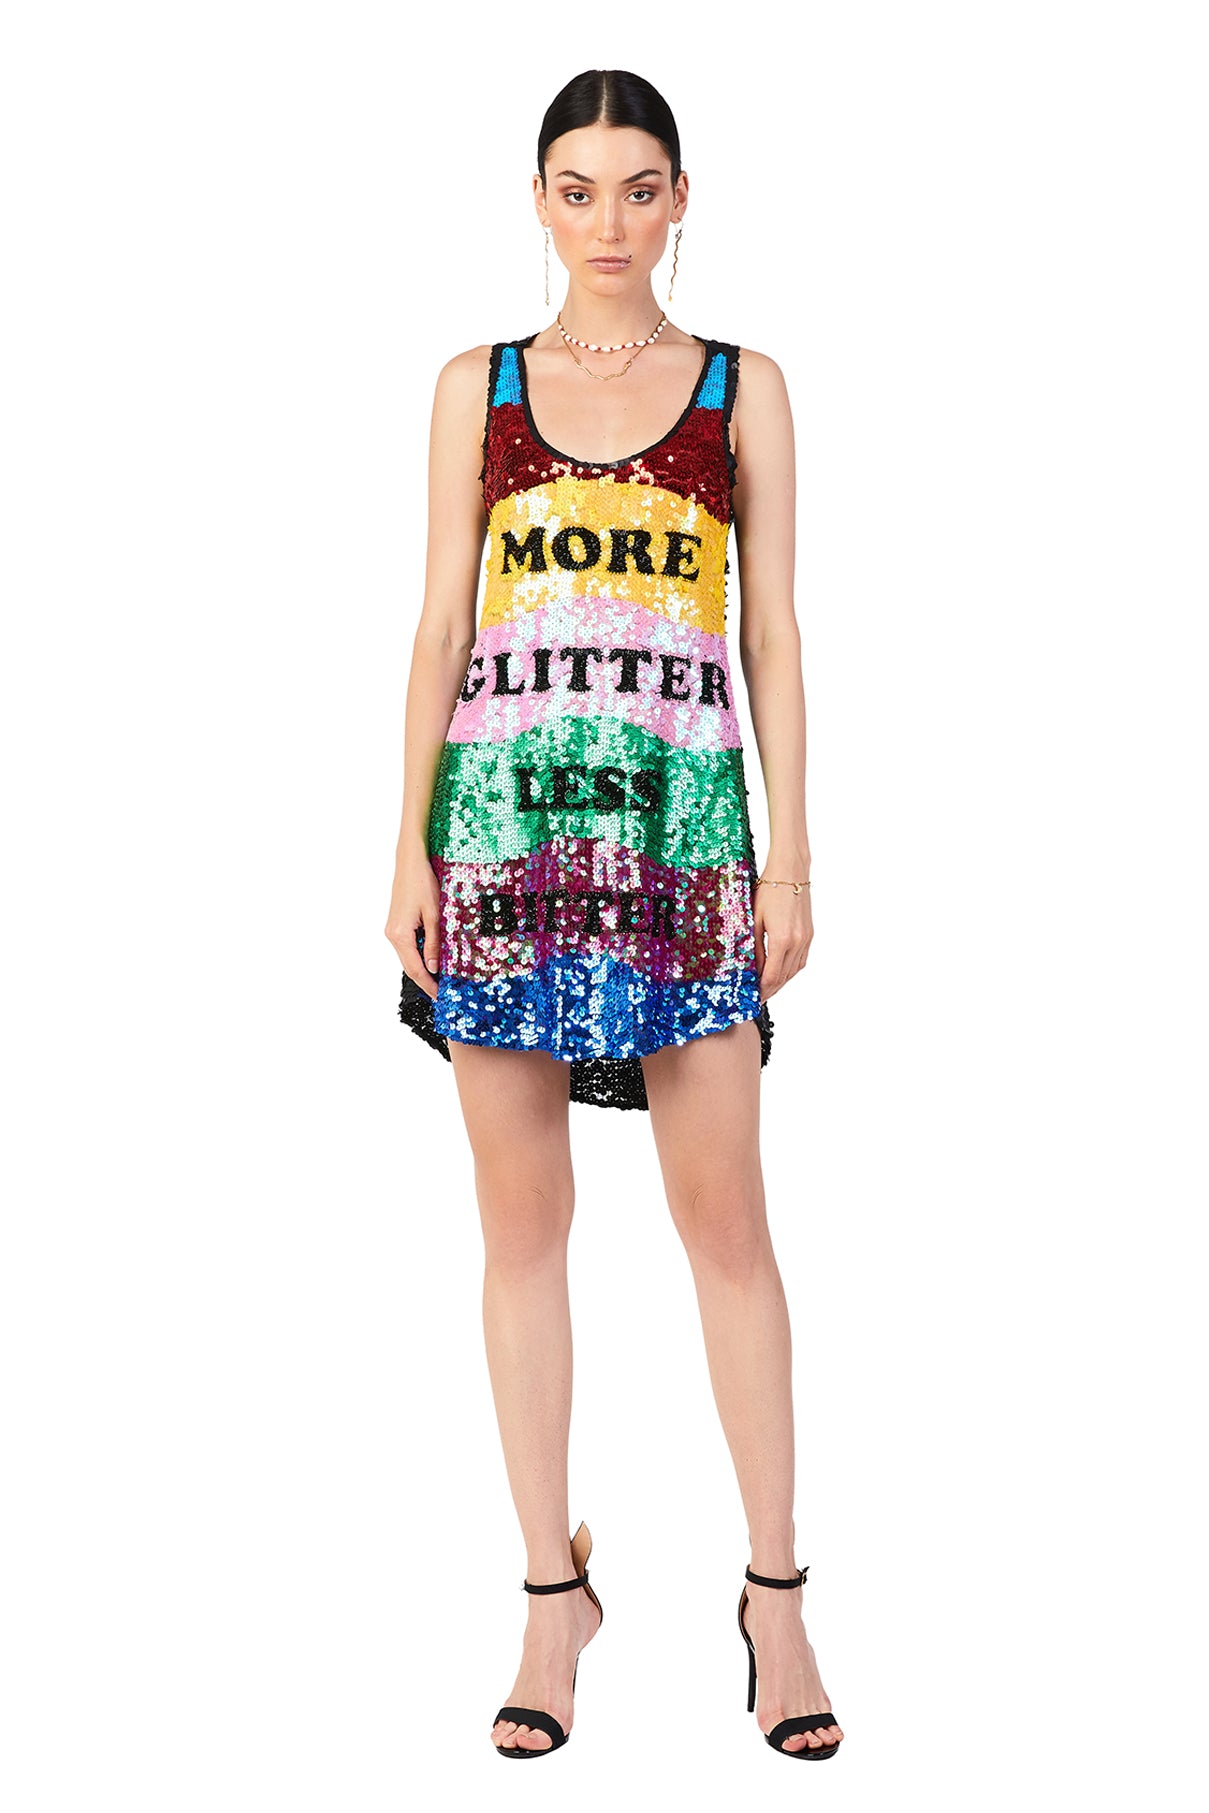 More Glitter Less Bitter Sequin Singlet Dress-Pre Order